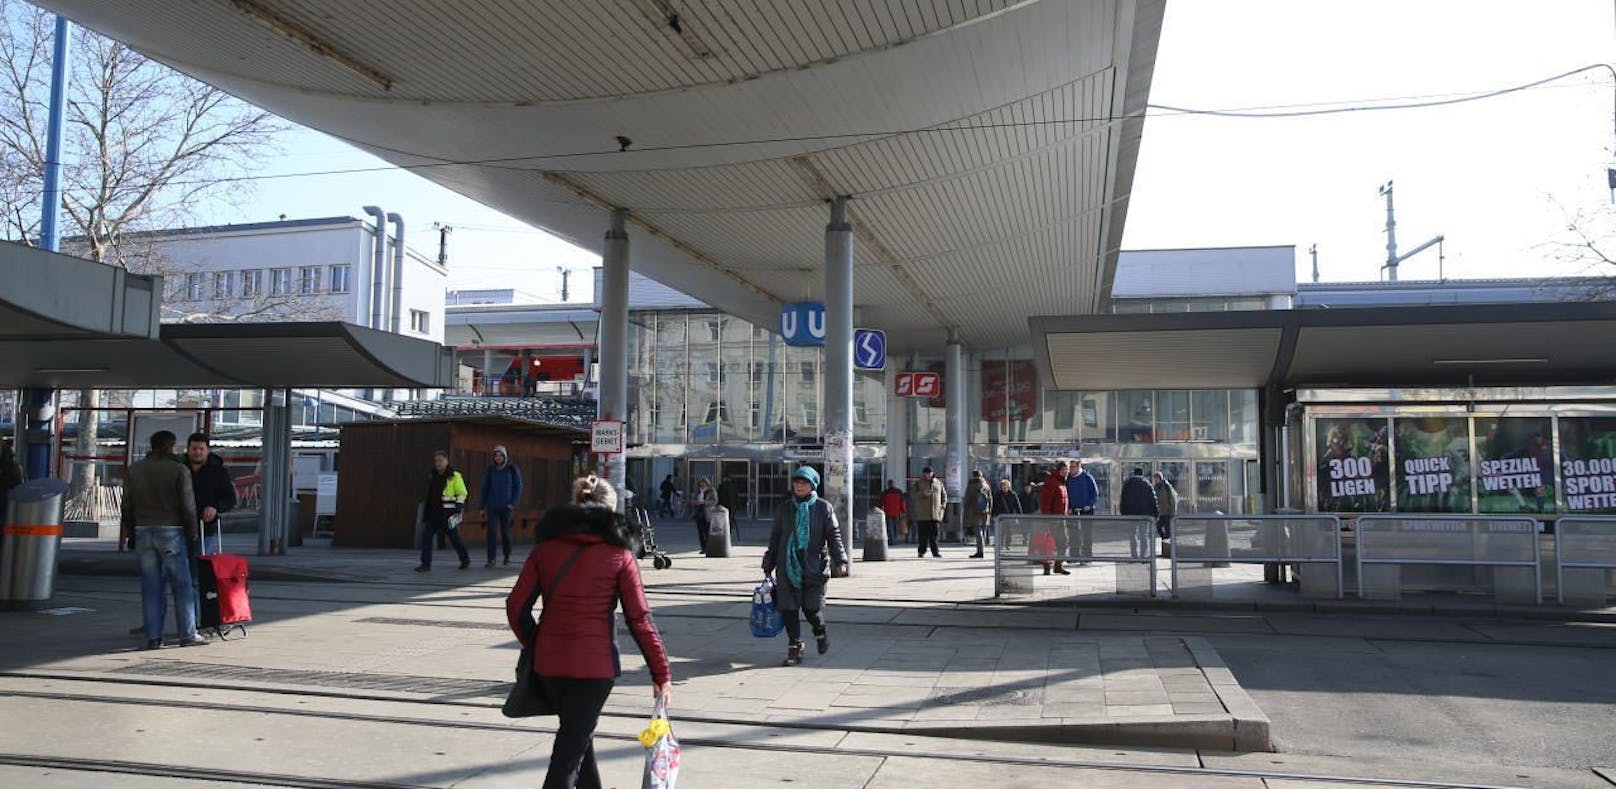 Am Bahnhof Floridsdorf wurde eine schwerverletzte Person unter rätselhaften Umständen gefunden.